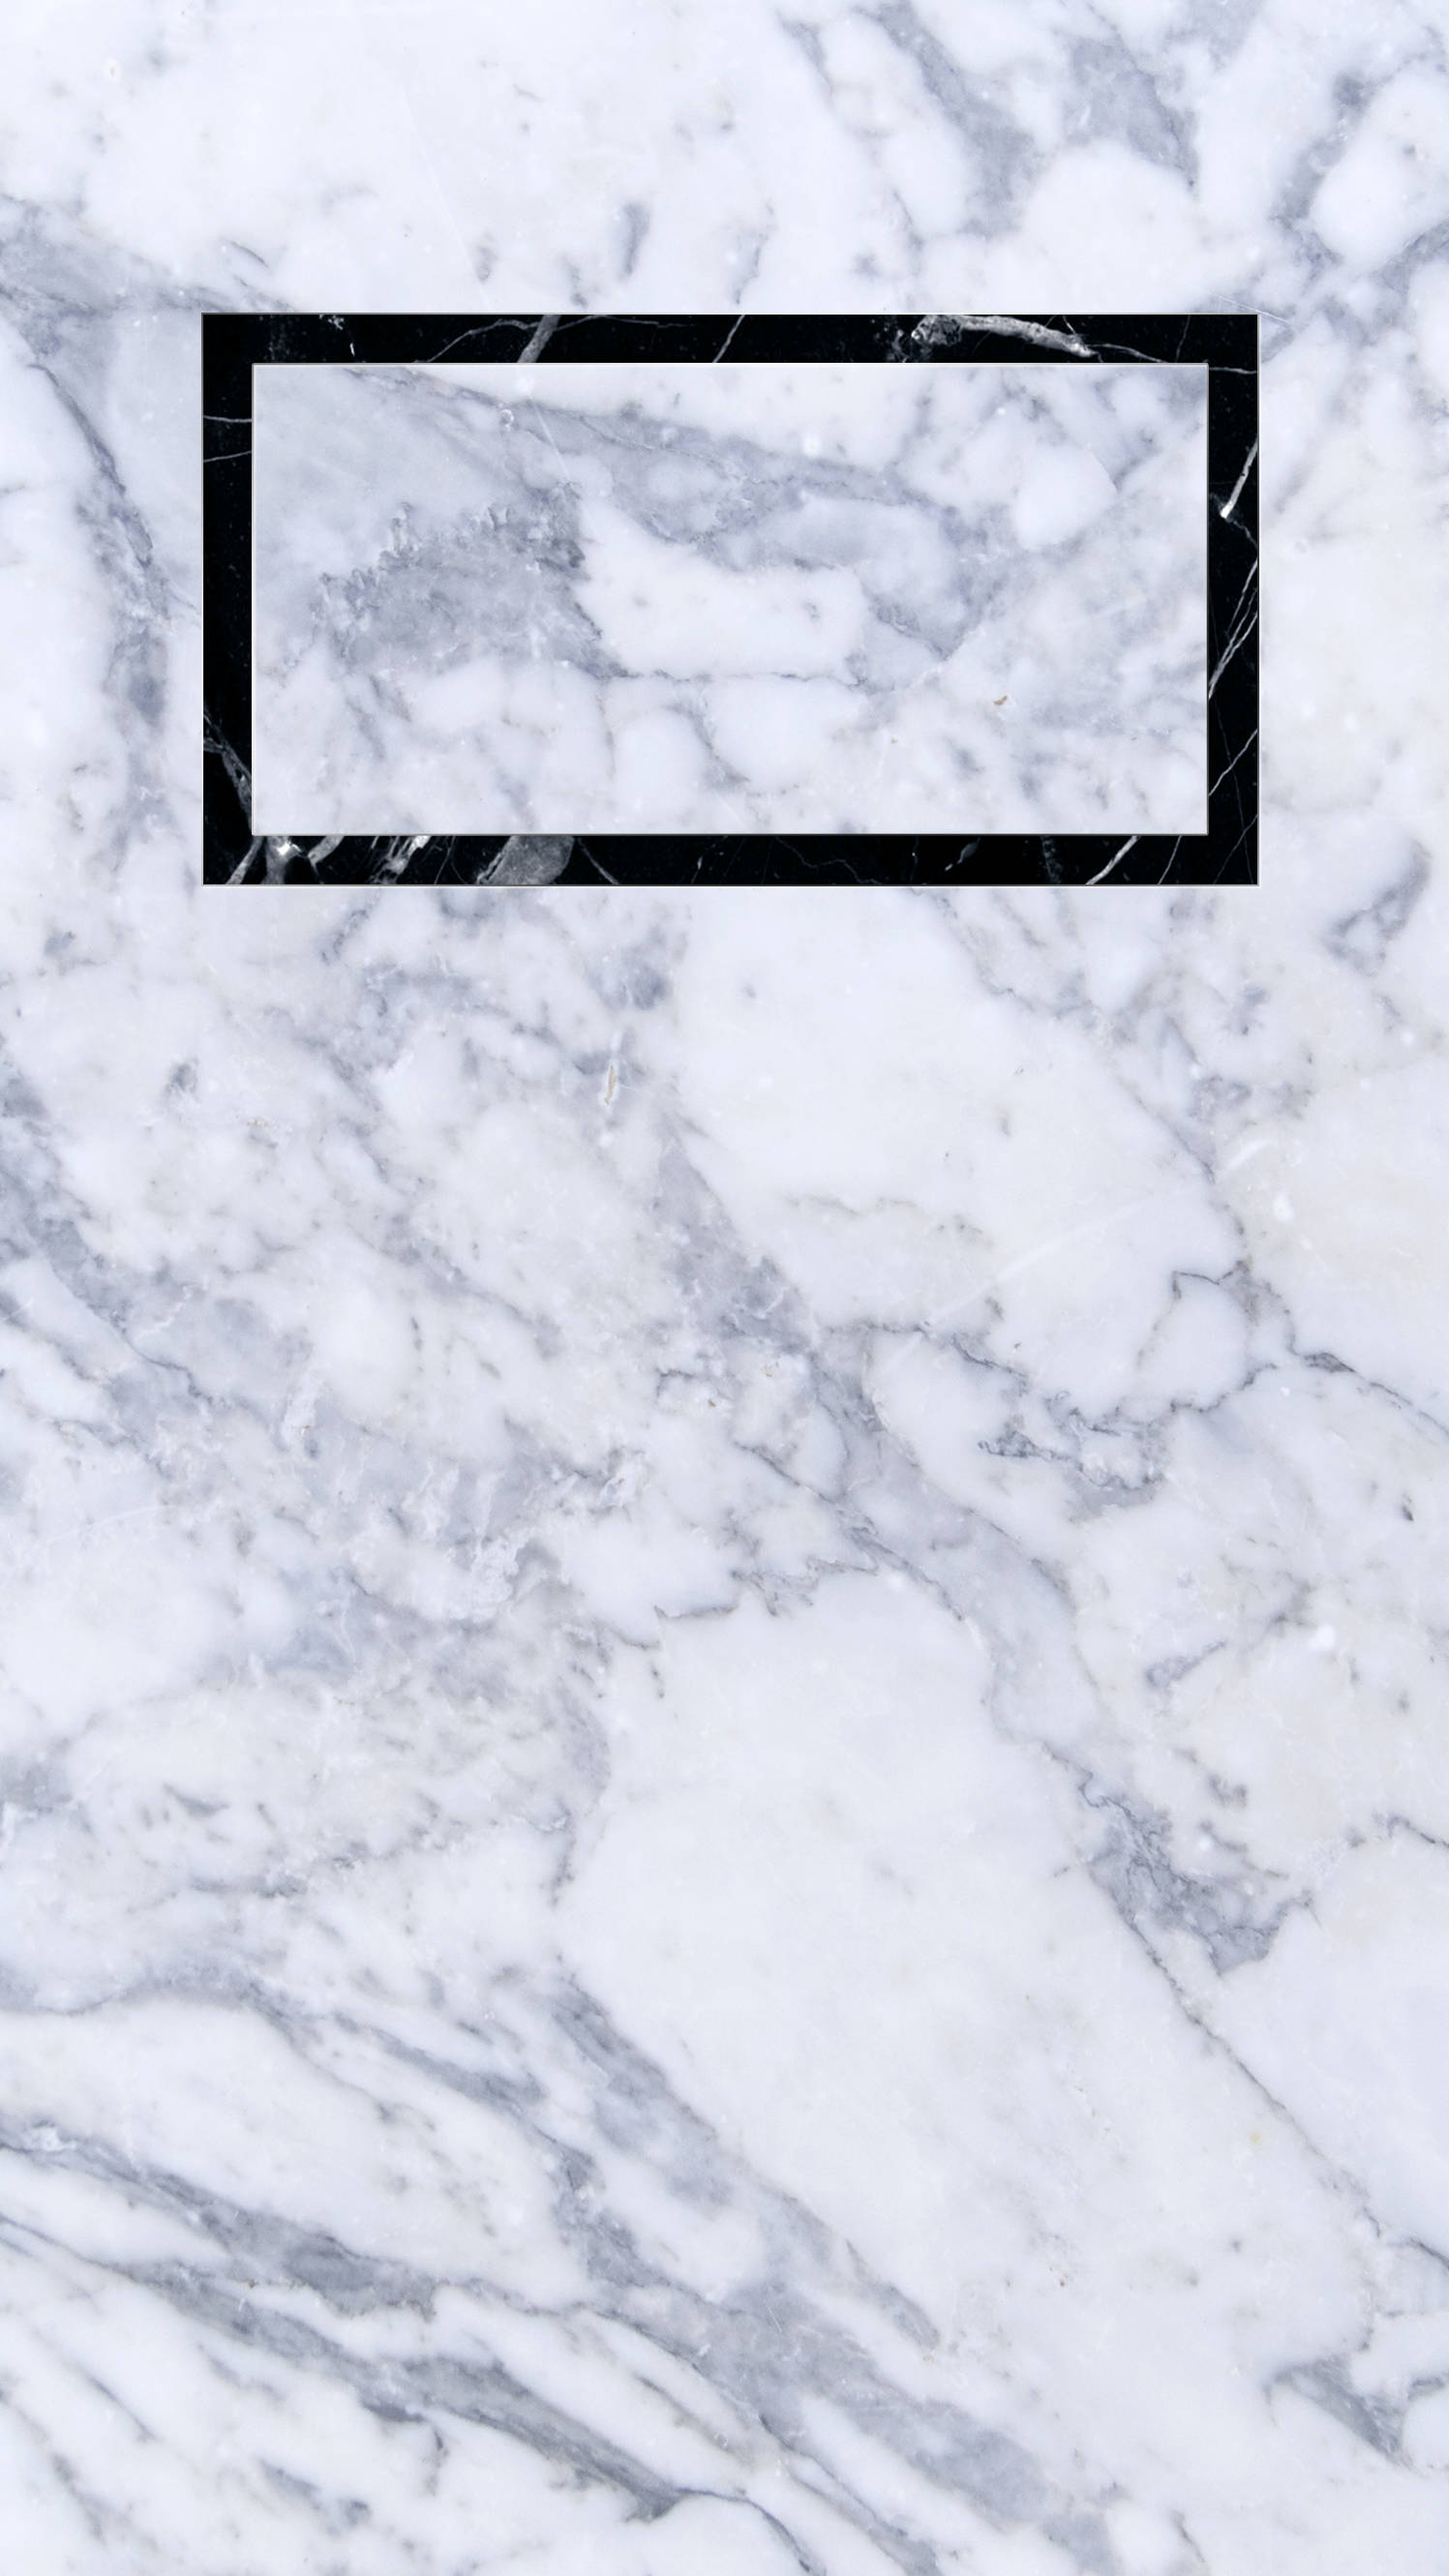 Caption: Sleek Black Clock On Elegant White Marble Iphone Background Background